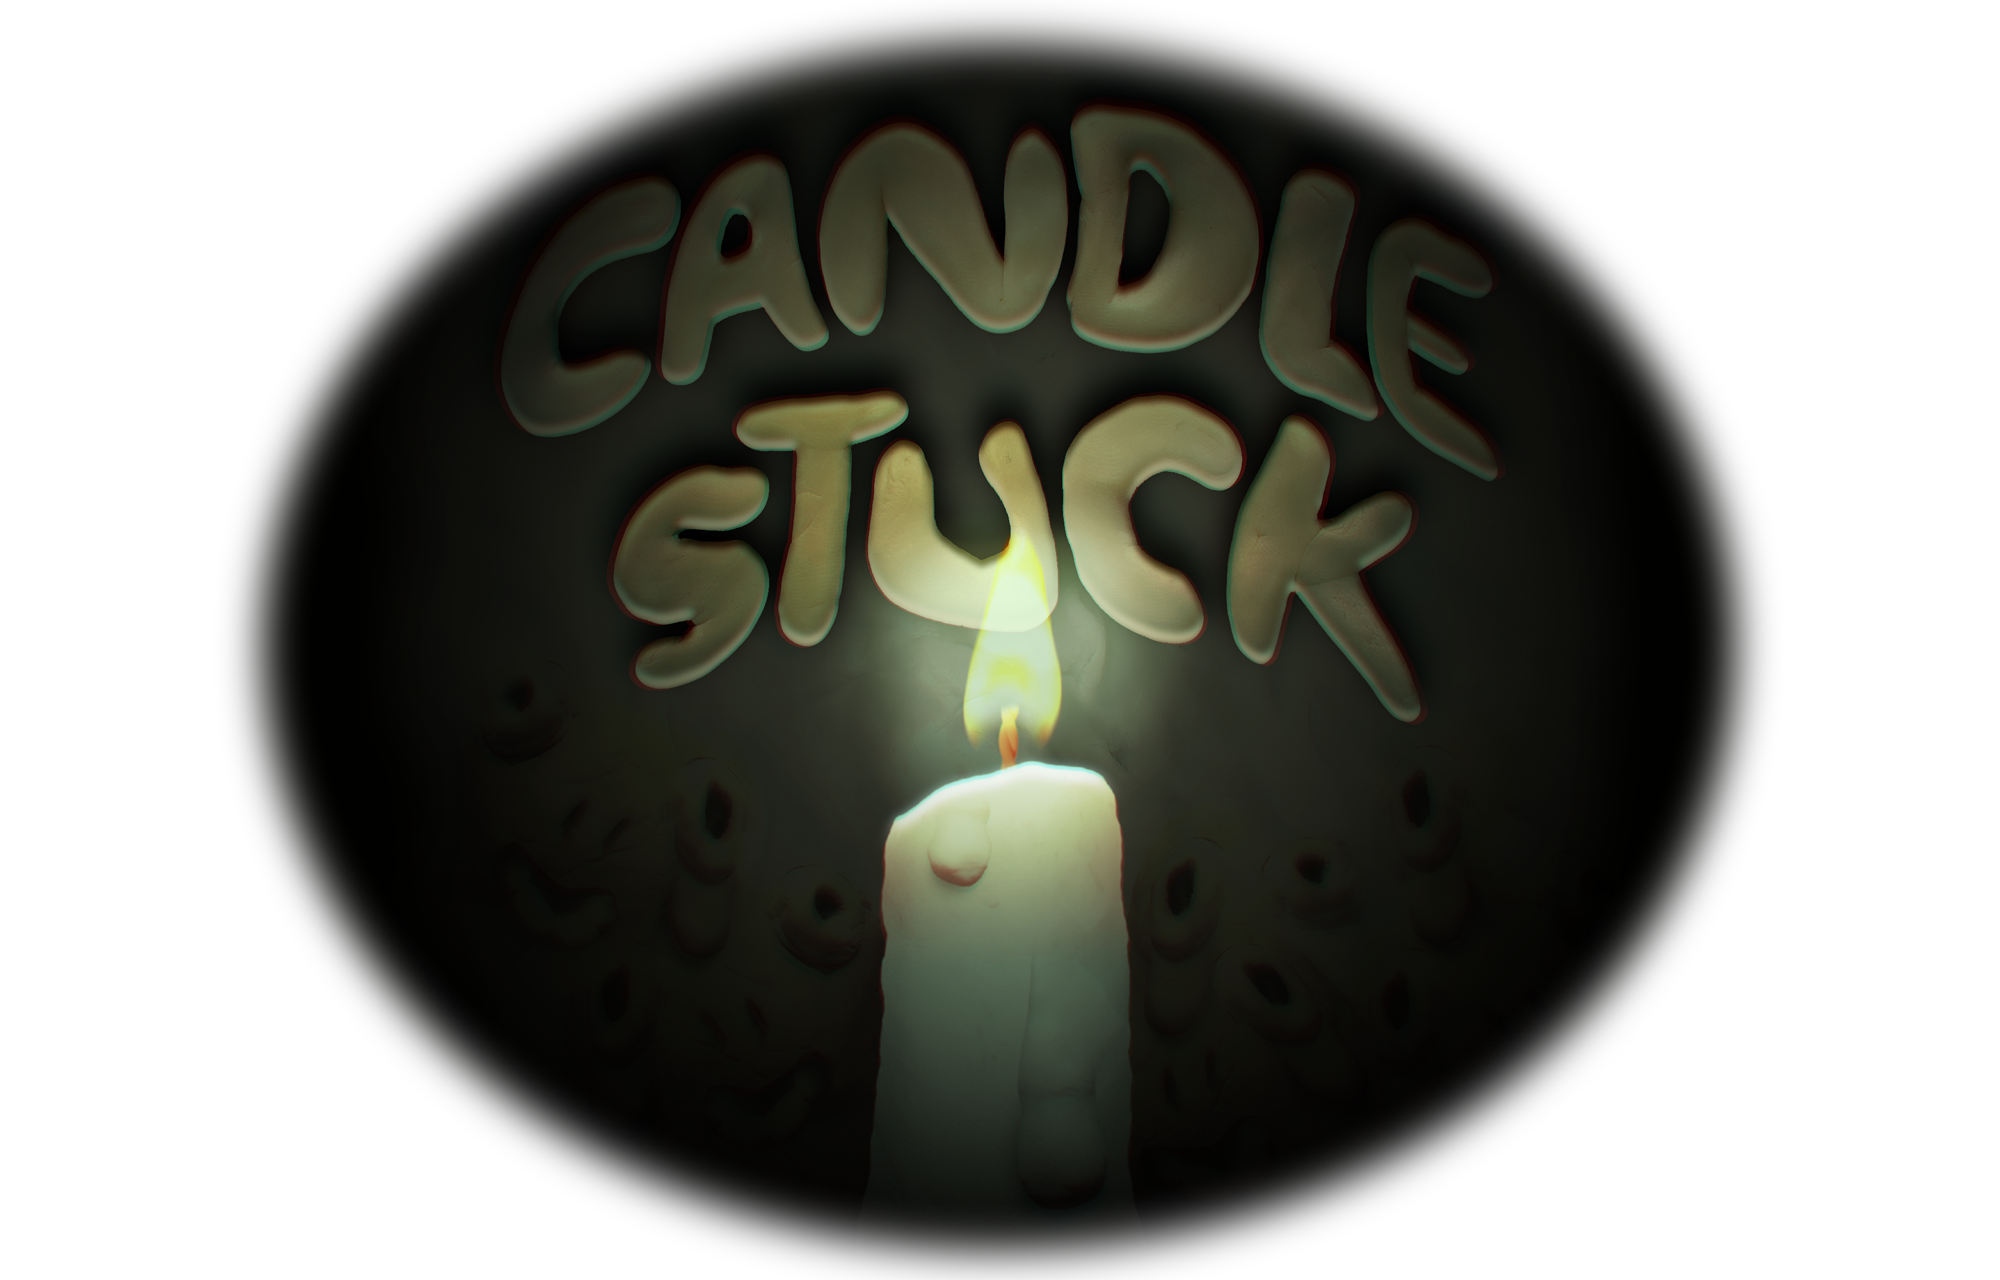 CandleStuck